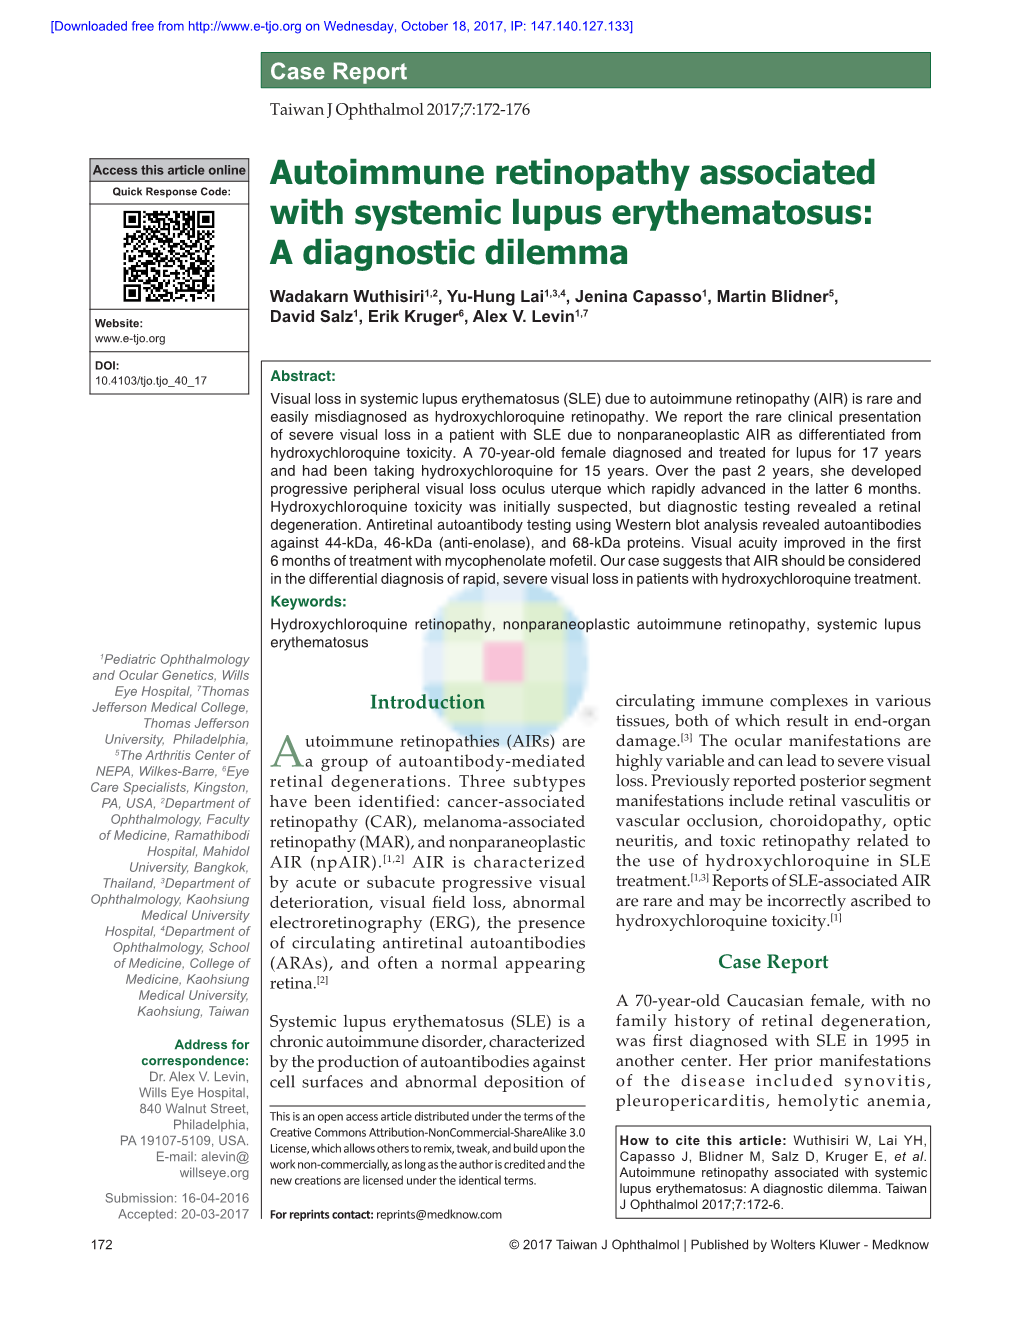 Autoimmune Retinopathy Associated With